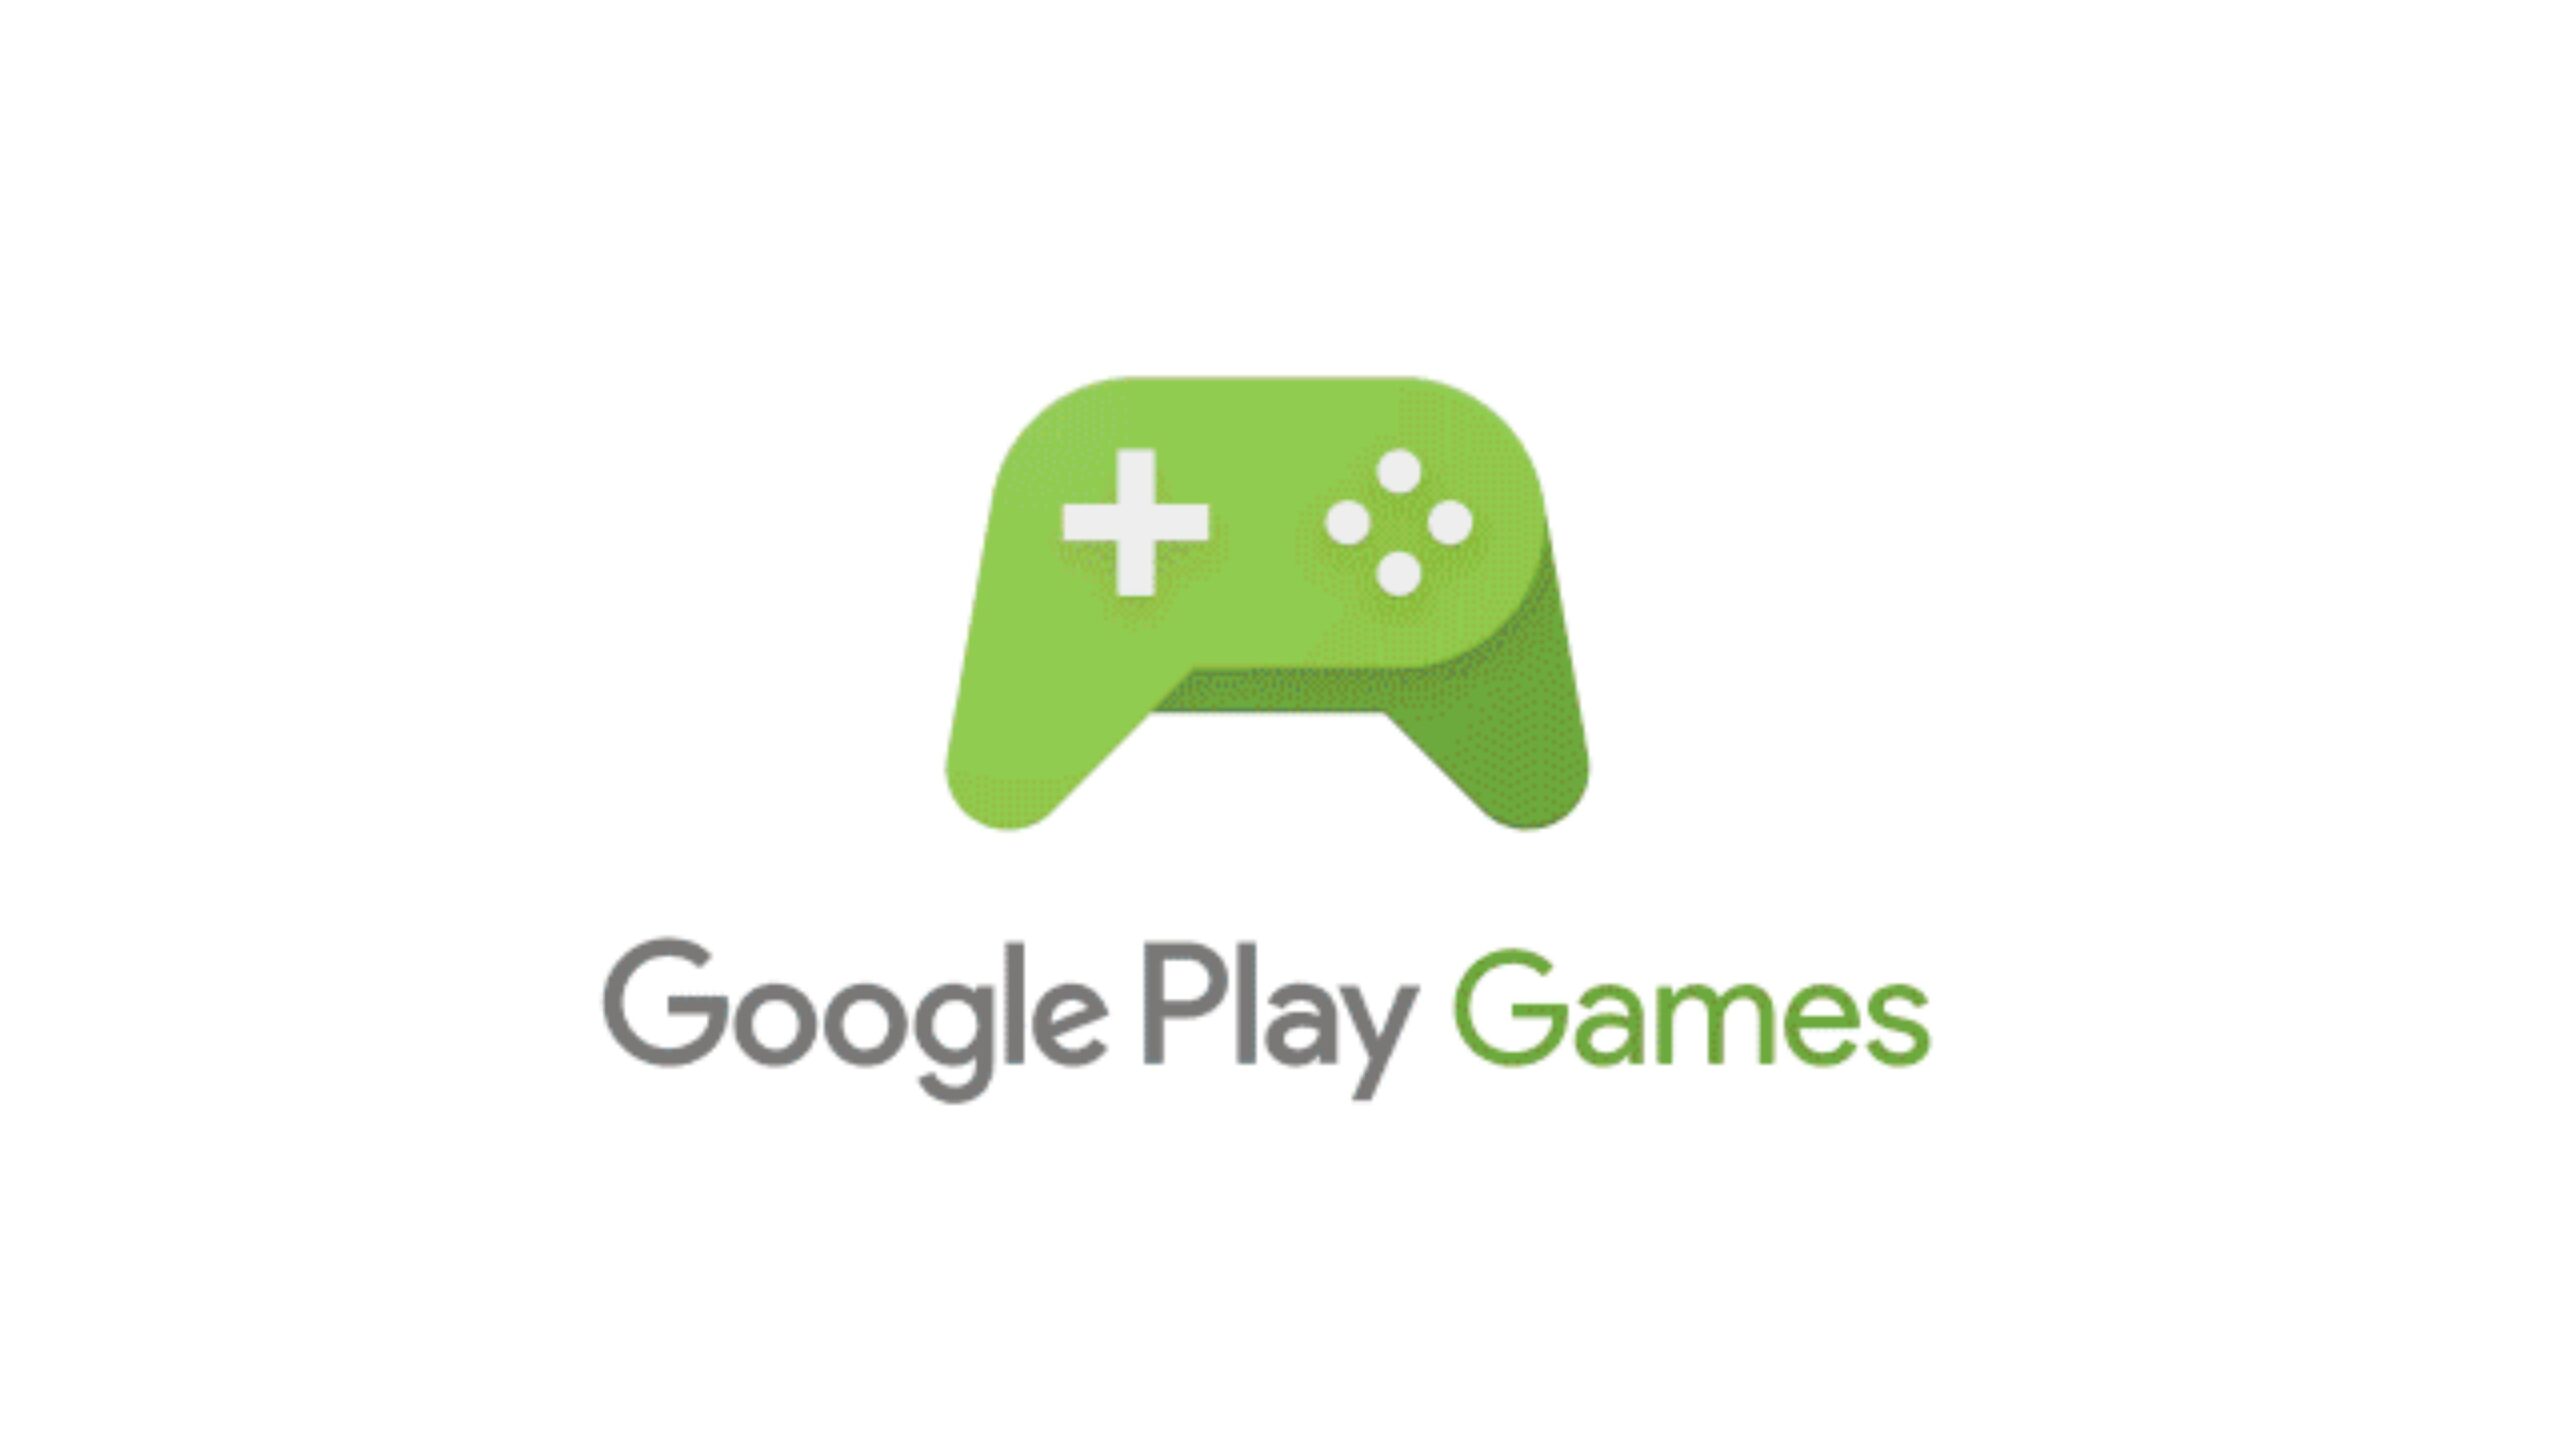 Google Play Games para PC chega ao Brasil com mais de 40 jogos